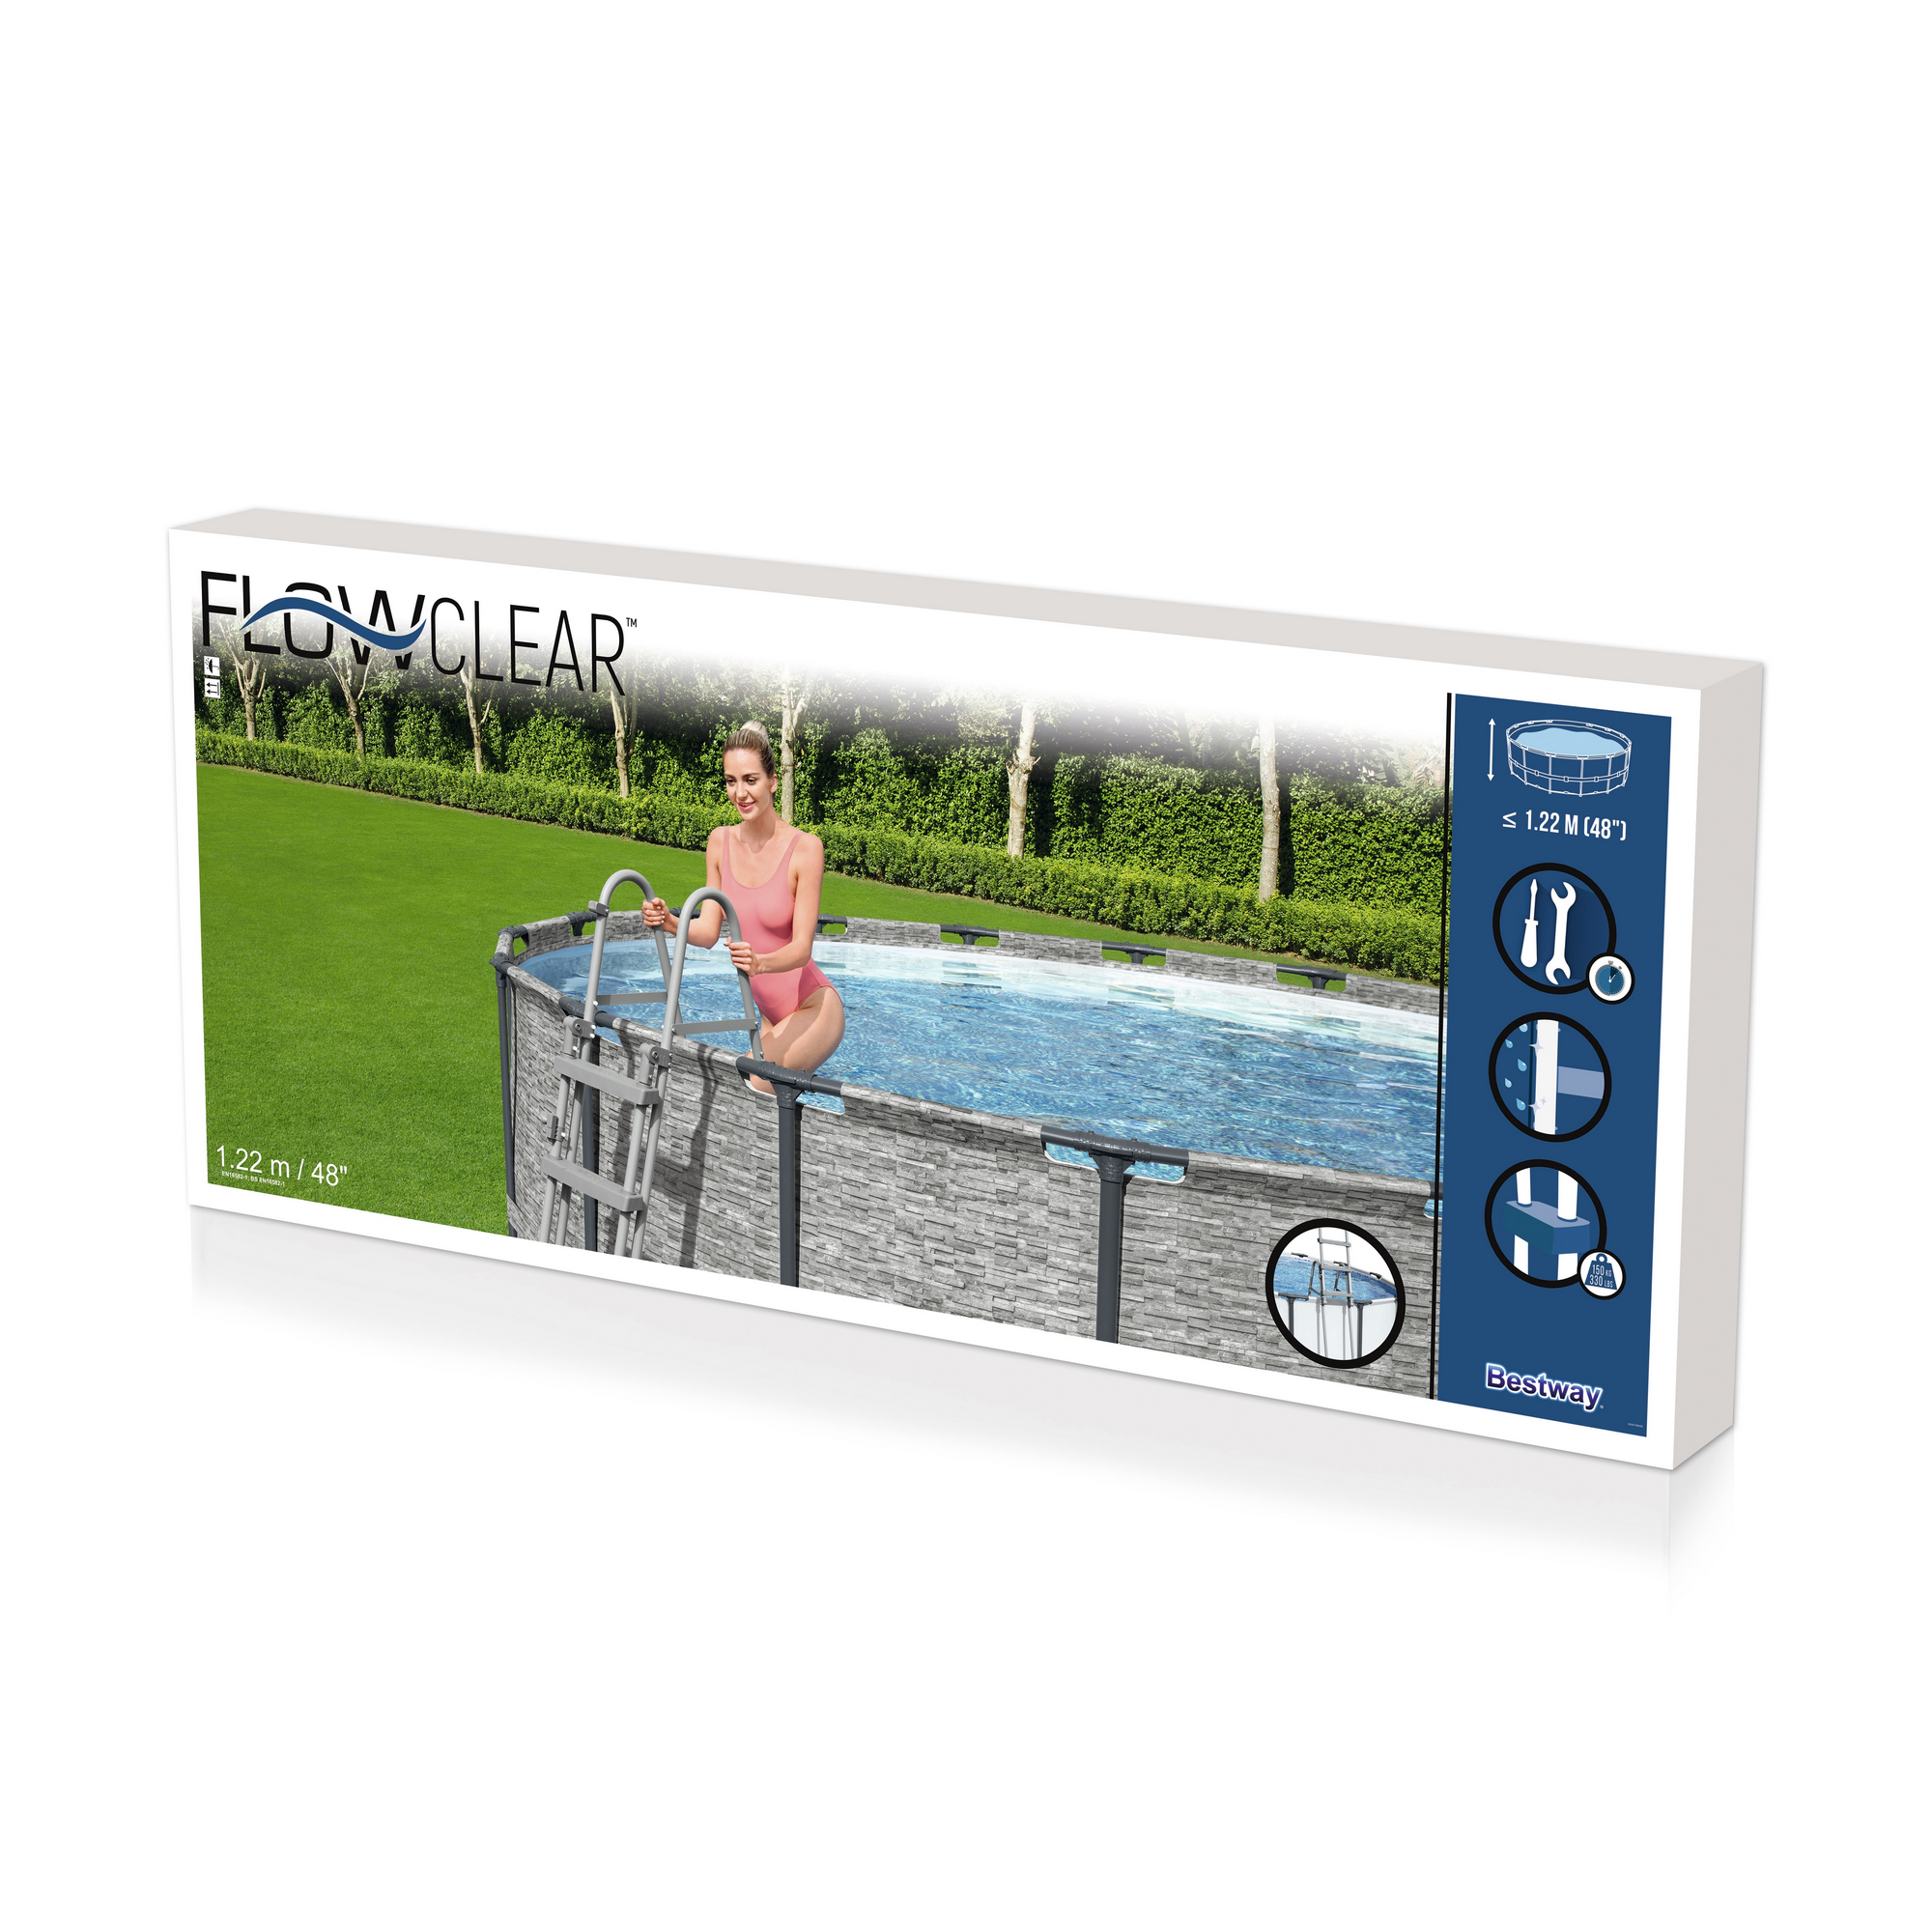 Pool-Sicherheitsleiter 'Flowclear™' Stahl 2 x 4 Stufen, 122 cm + product picture